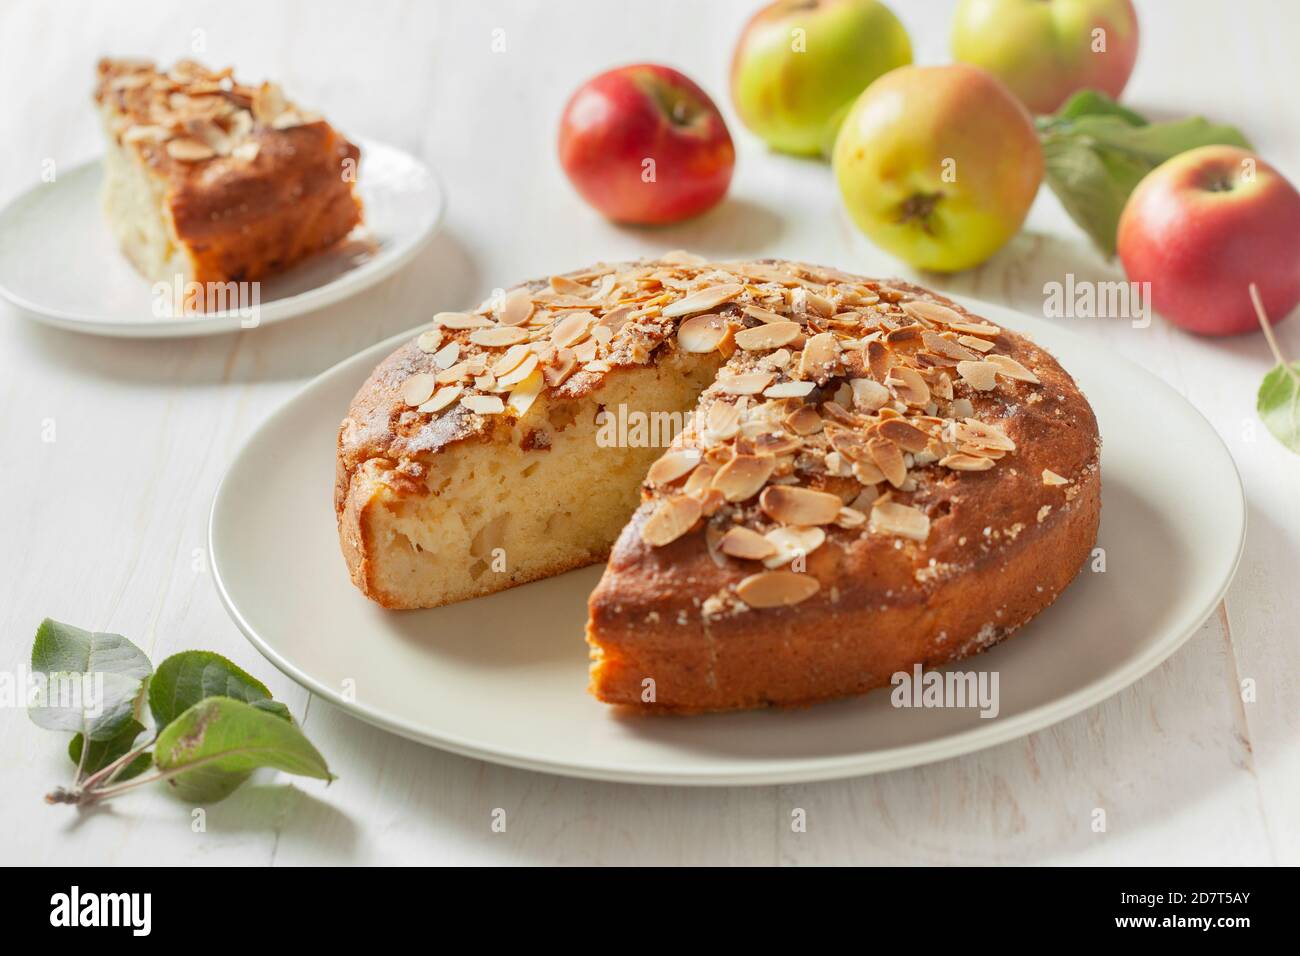 gâteau aux pommes (pomme apfel kuchen), pommes fraîches sur fond de bois. Banque D'Images